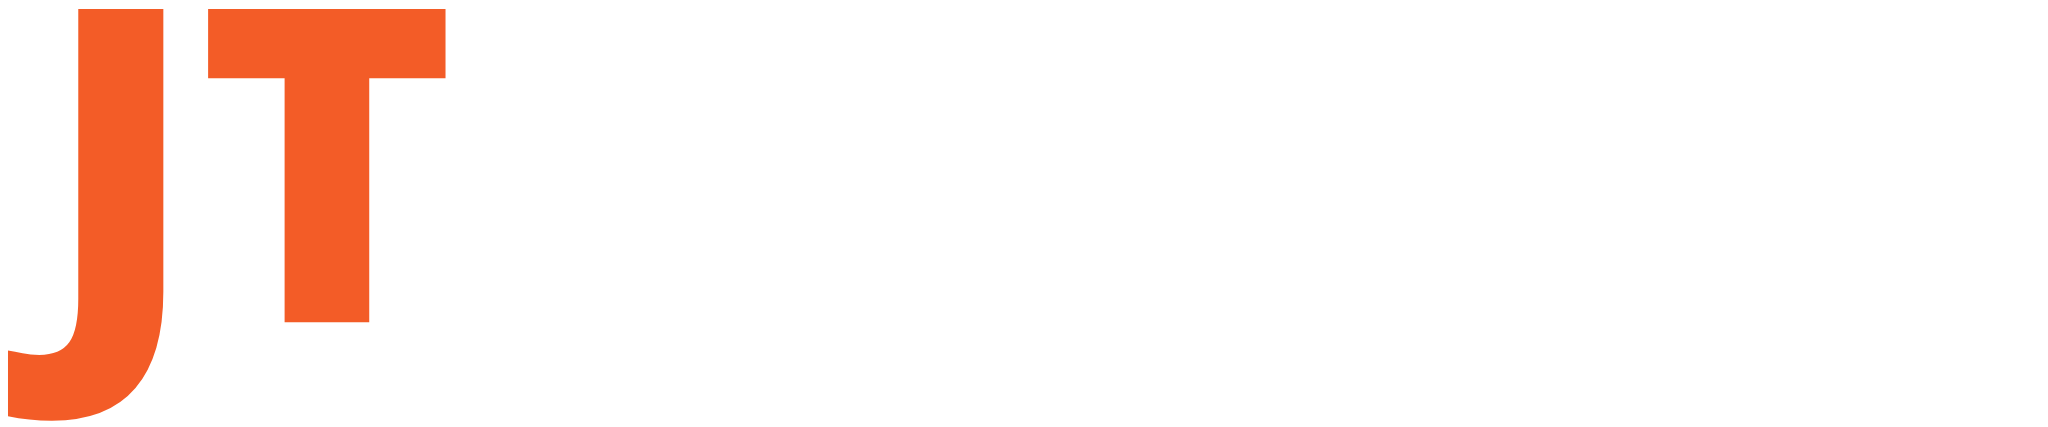 Perito Electricista | JT Electrical Contrator